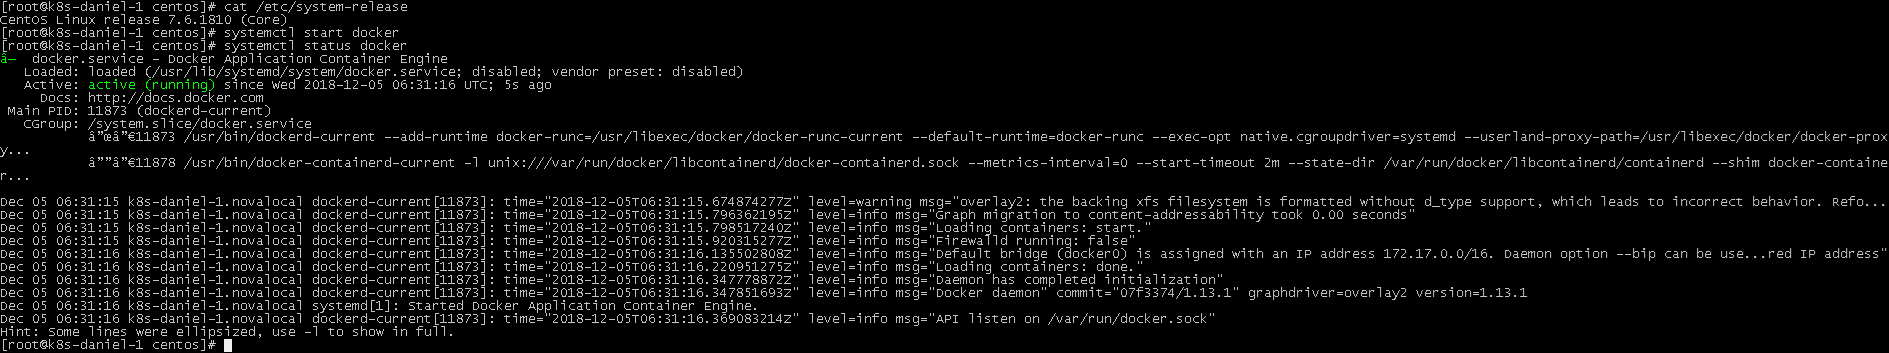 CentOS版本问题安装Docker报错的解决方案